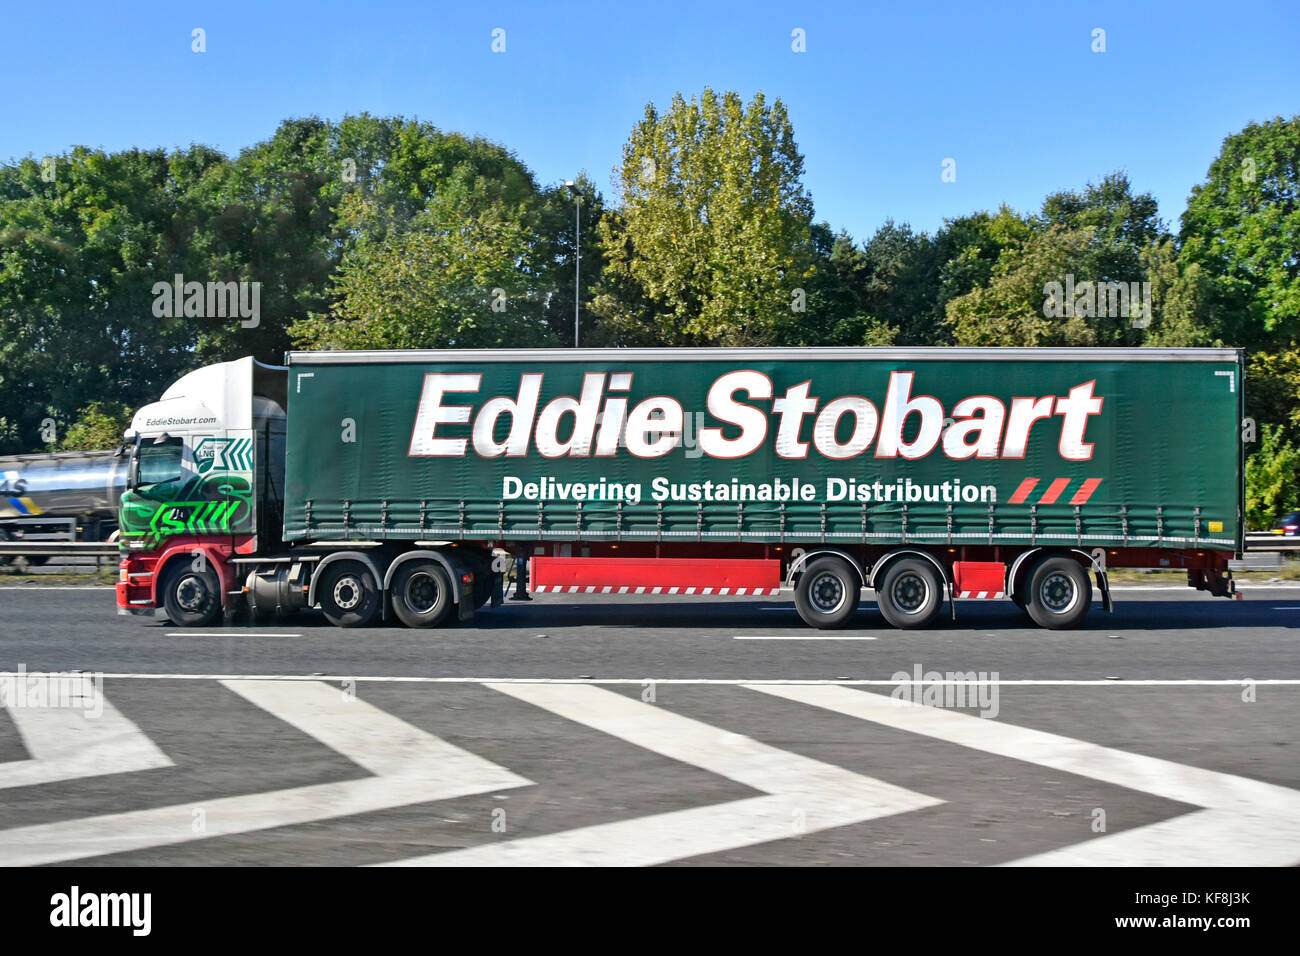 Eddie Stobart chaîne d'hgv lorry Truck & Trailer rideau parois souples en voiture sur l'autoroute britannique passant d'incubation de jonction marquages checane Banque D'Images